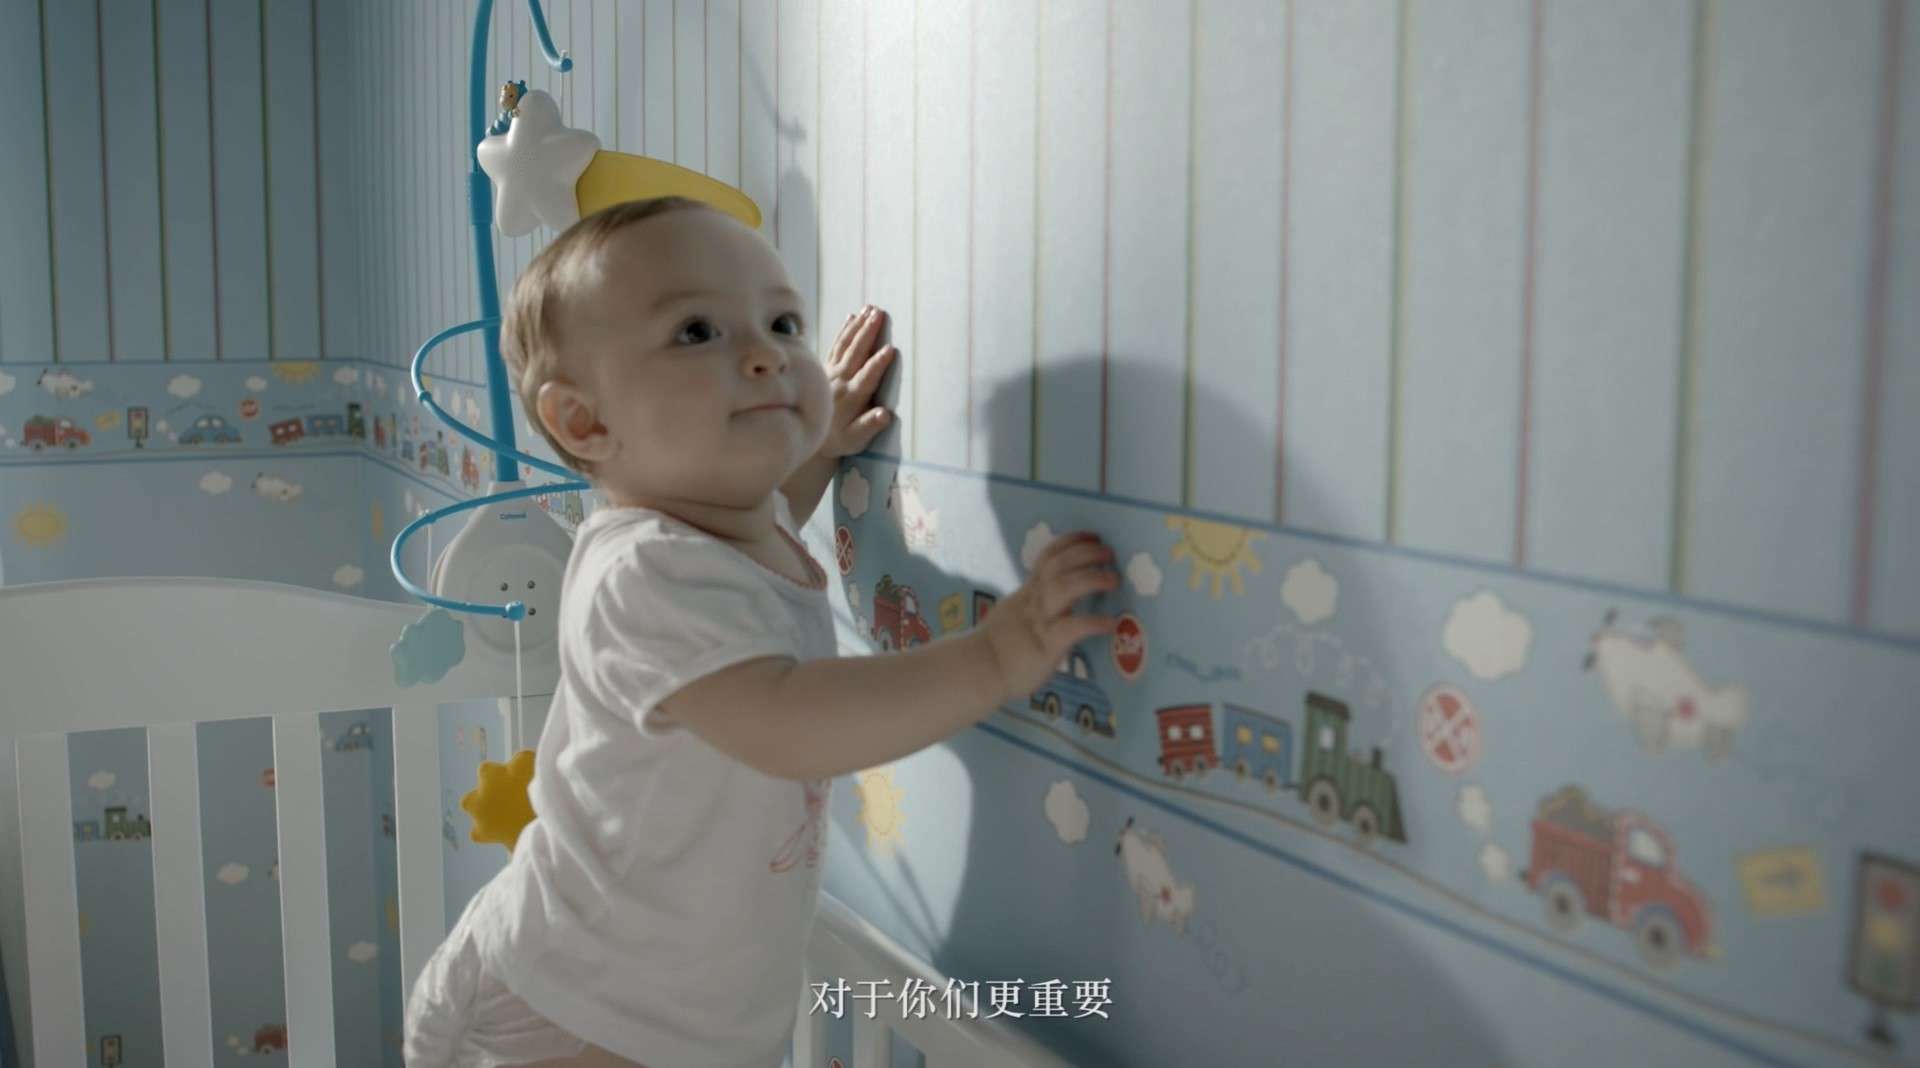 上海真蒂装饰材料有限公司 壁纸宣传片